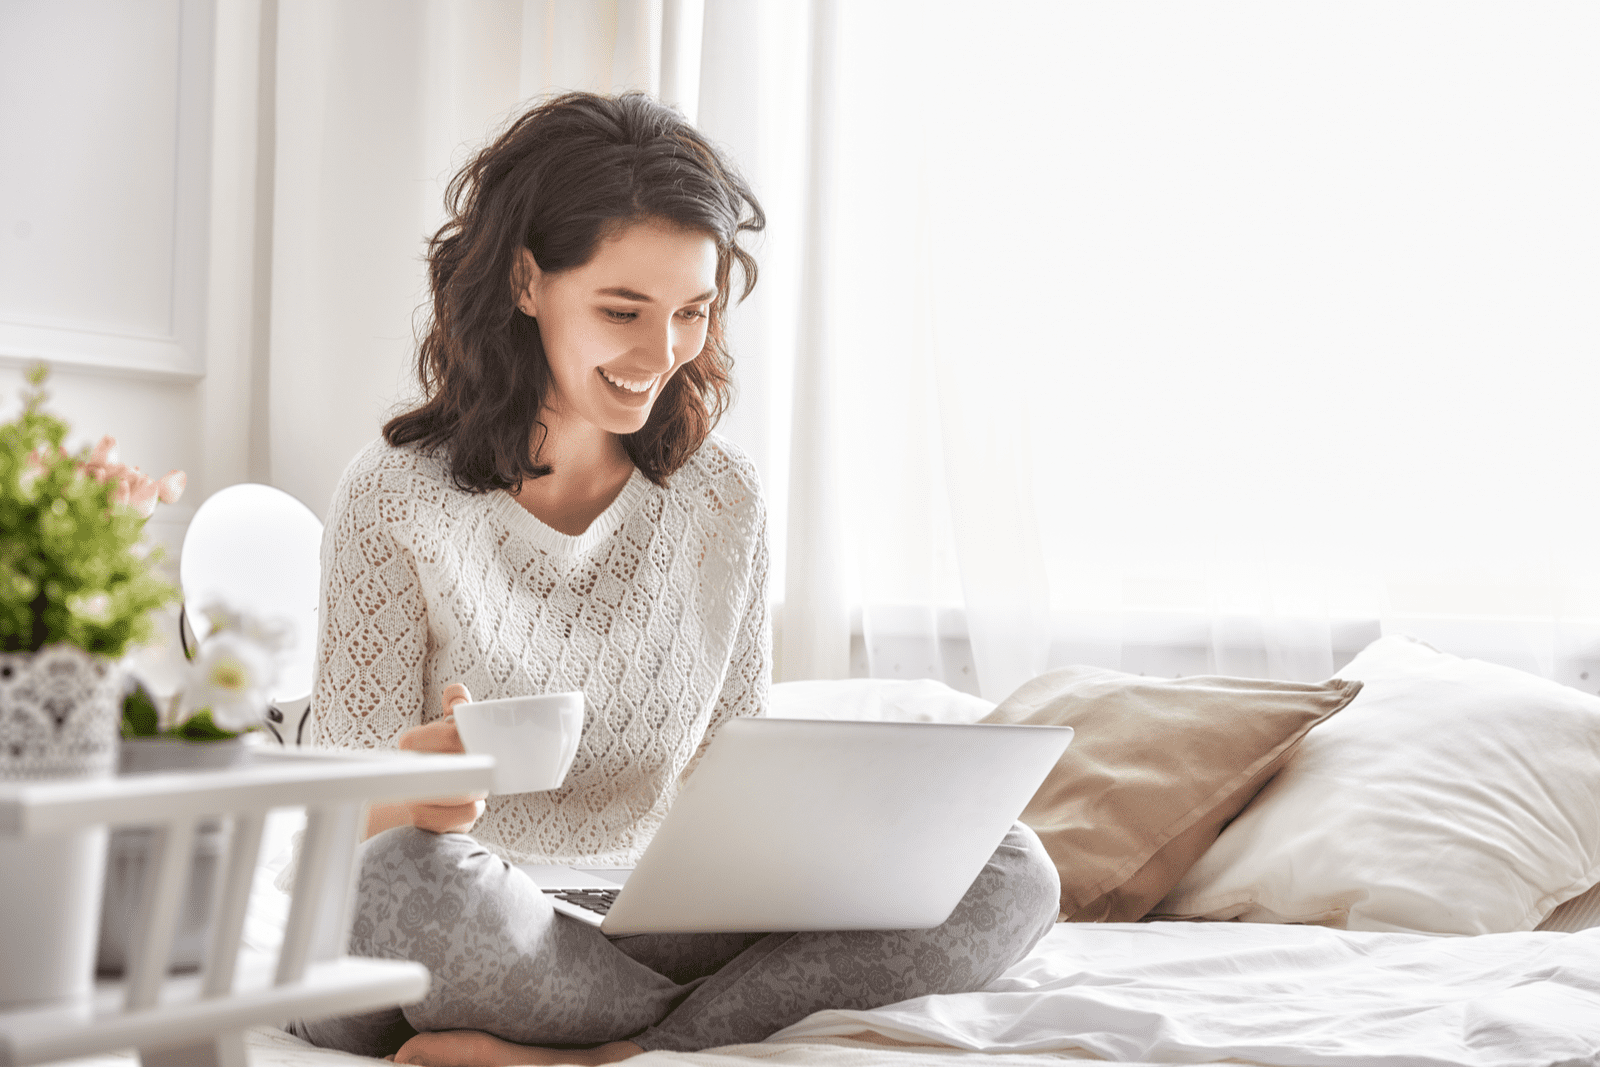 una donna sorridente siede dietro un computer portatile sul letto e tiene una tazza in mano